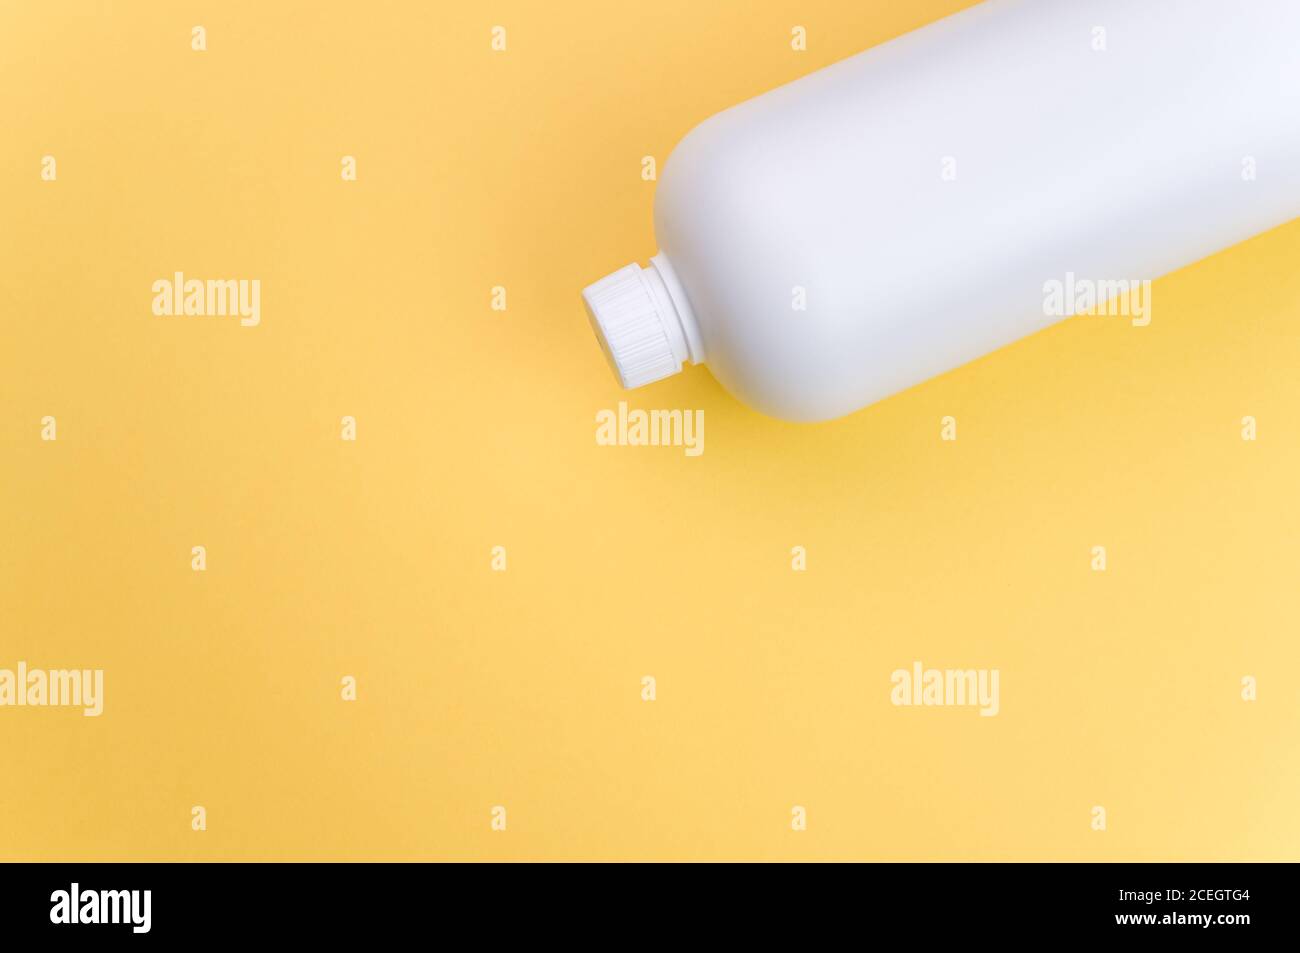 Nahaufnahme eines weißen Plastikbehälters auf einem gelben Oberfläche Stockfoto